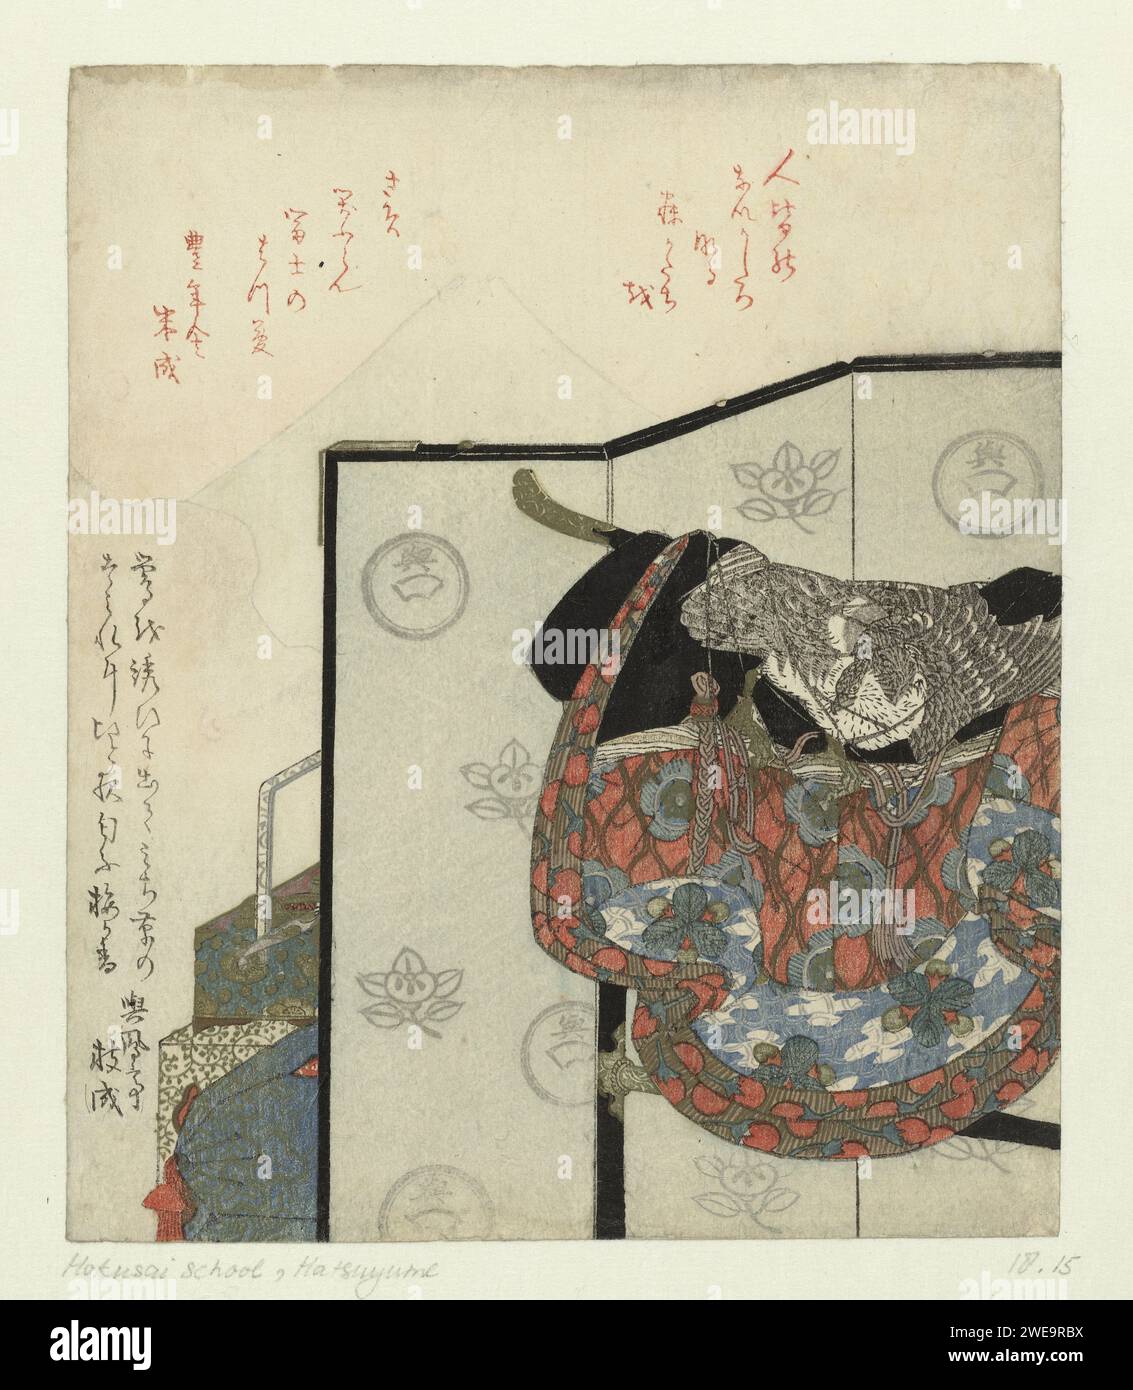 Ein Autoschirm mit einem Kimono auf einem Regal, anonym, um 1822 - um 1828 Ein Autoschirm mit einem Regal, in dem ein Kimono mit dem Bild eines Falken und Auberginen abgebildet ist. Der Walk und die Auberginen sind Elemente des ersten glücklichen Traums (Hatsuyume) des neuen Jahres. Das dritte Element, der Fuji, wird durch den Rauch einer Pfeife gebildet, die jemanden hinter dem Klappschirm raucht. Damit sie einen solchen Traum von Glück bekommen, wurde im alten Jahr ein Bild des Schatzschiffs unter das Kissen gelegt. Mit zwei Gedichten. Japan Papier Farbe Holzschnitt / Polierschirm, faltender Bildschirm Stockfoto